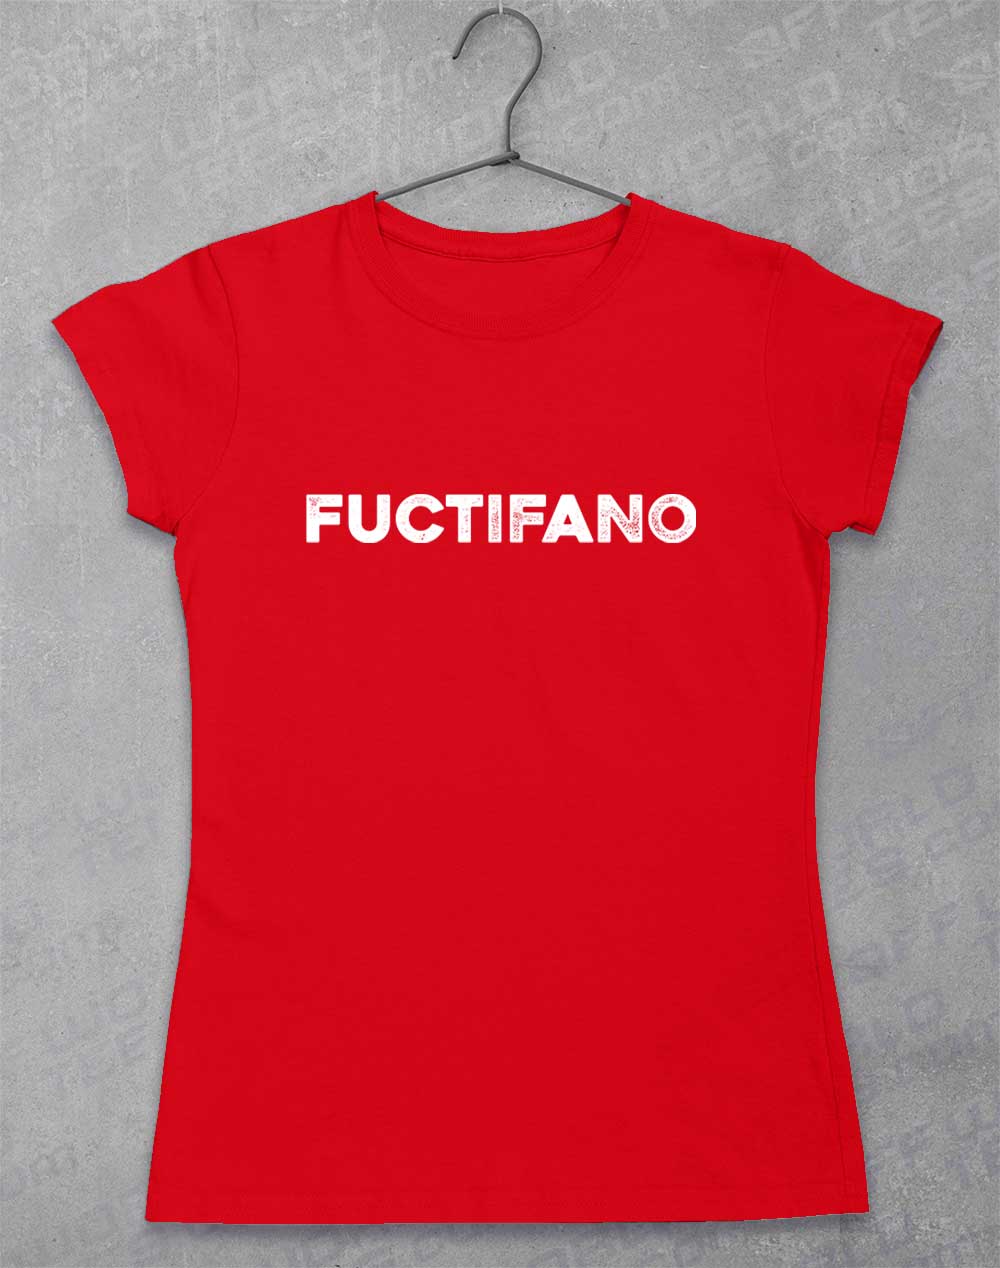 Red - Fuctifano Women's T-Shirt